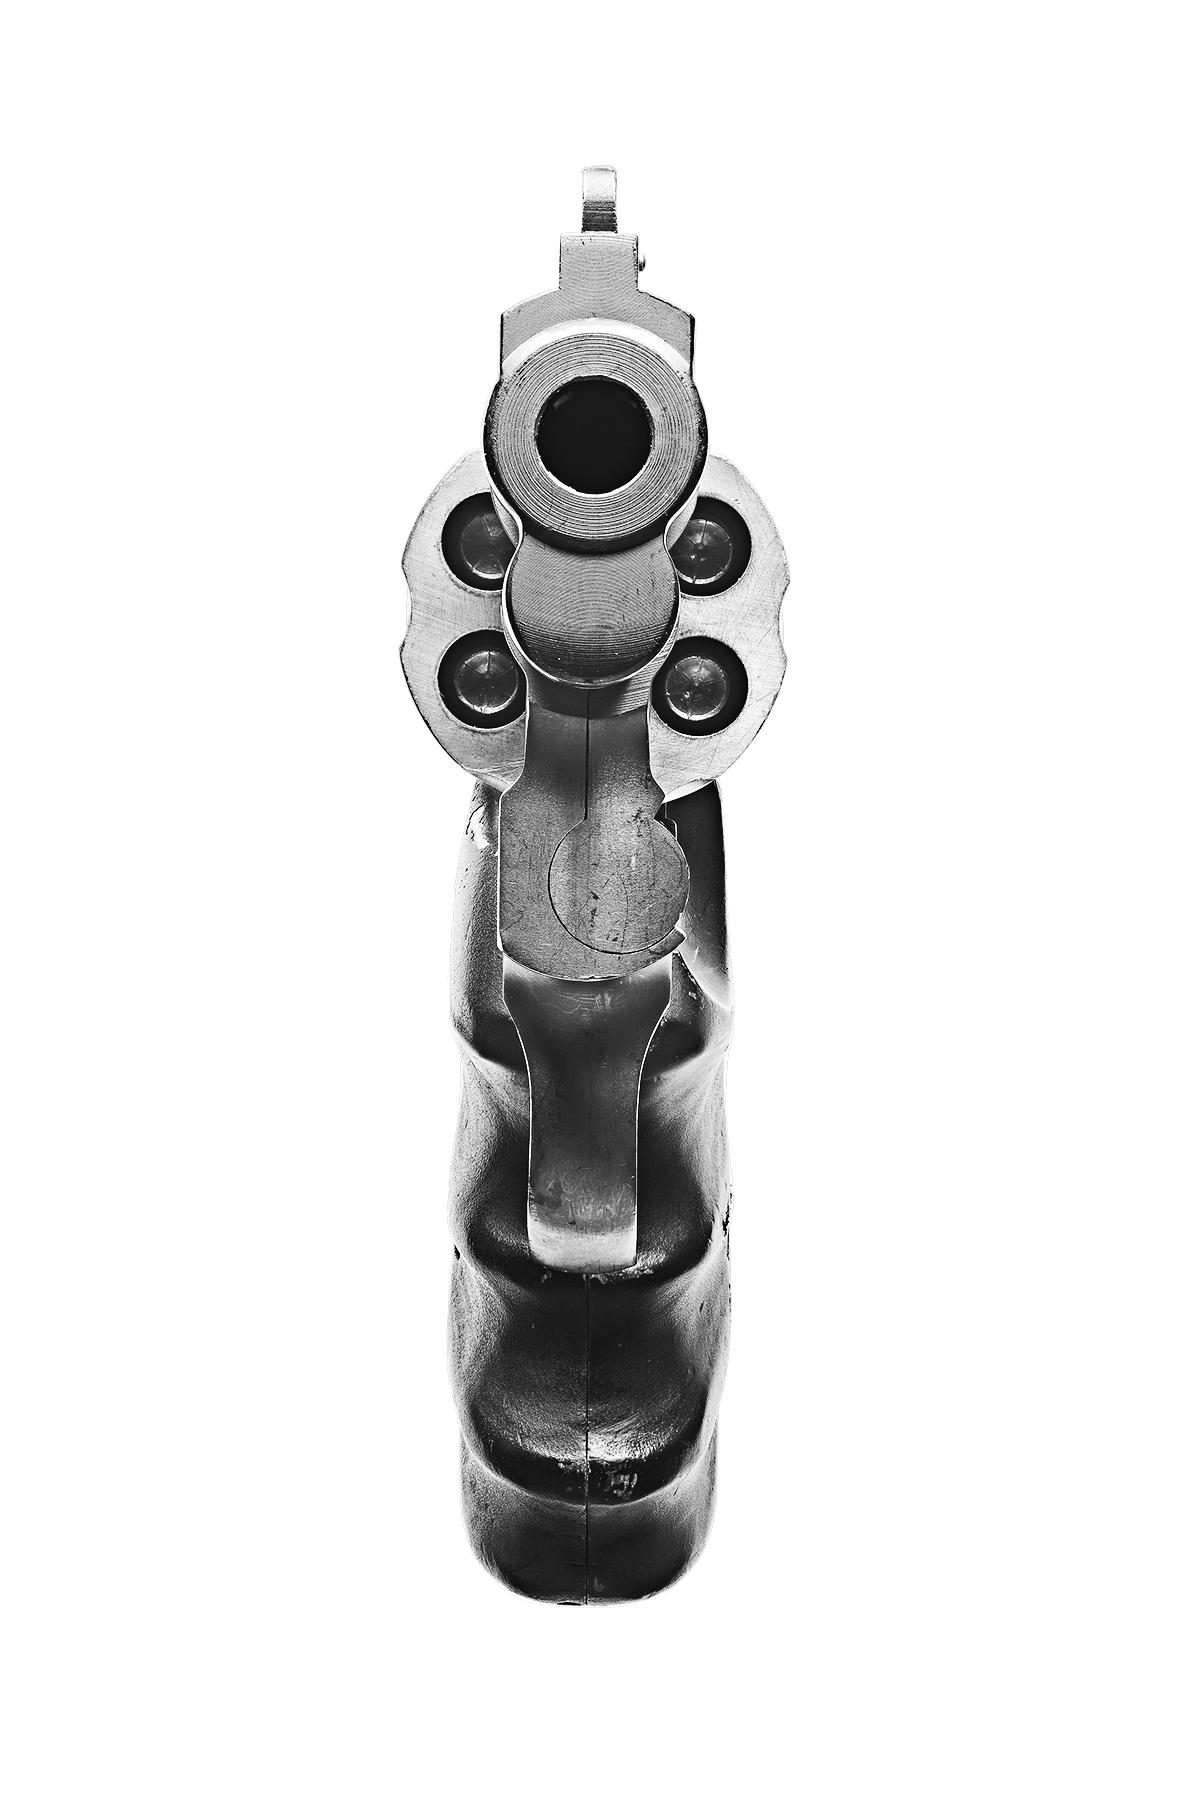 S&W .357 Magnum
C.C.I.C. / Impression pigmentaire d'archives
Edition de 20 exemplaires par format
Tailles disponibles :
36 x 72 pouces
48 x 96 pouces

Dans Point Blank, l'agrandissement des armes de poing par Lusztyk anthropomorphise et abstrait son